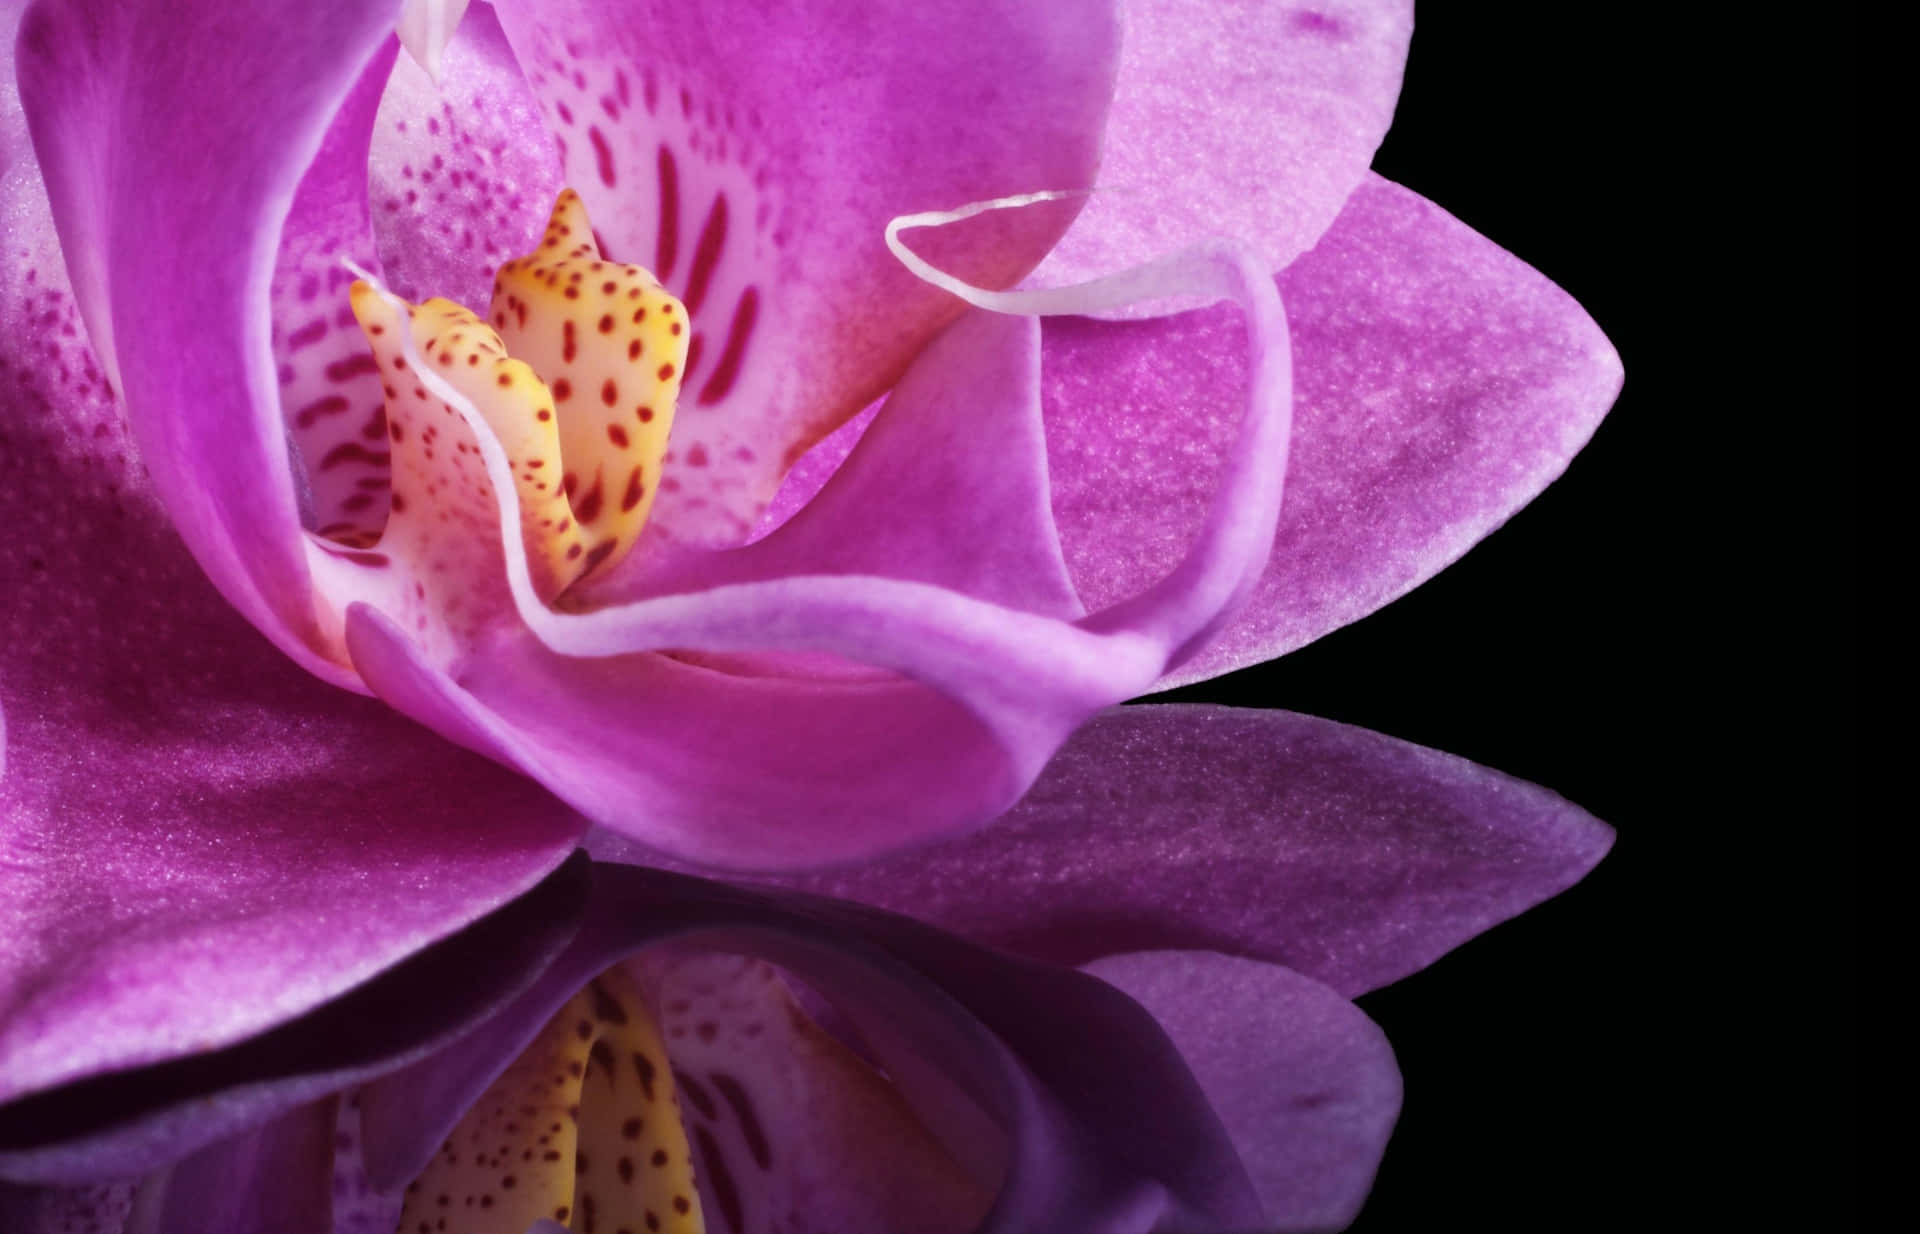 Atemberaubendschöne Orchidee In Ihrem Natürlichen Lebensraum.